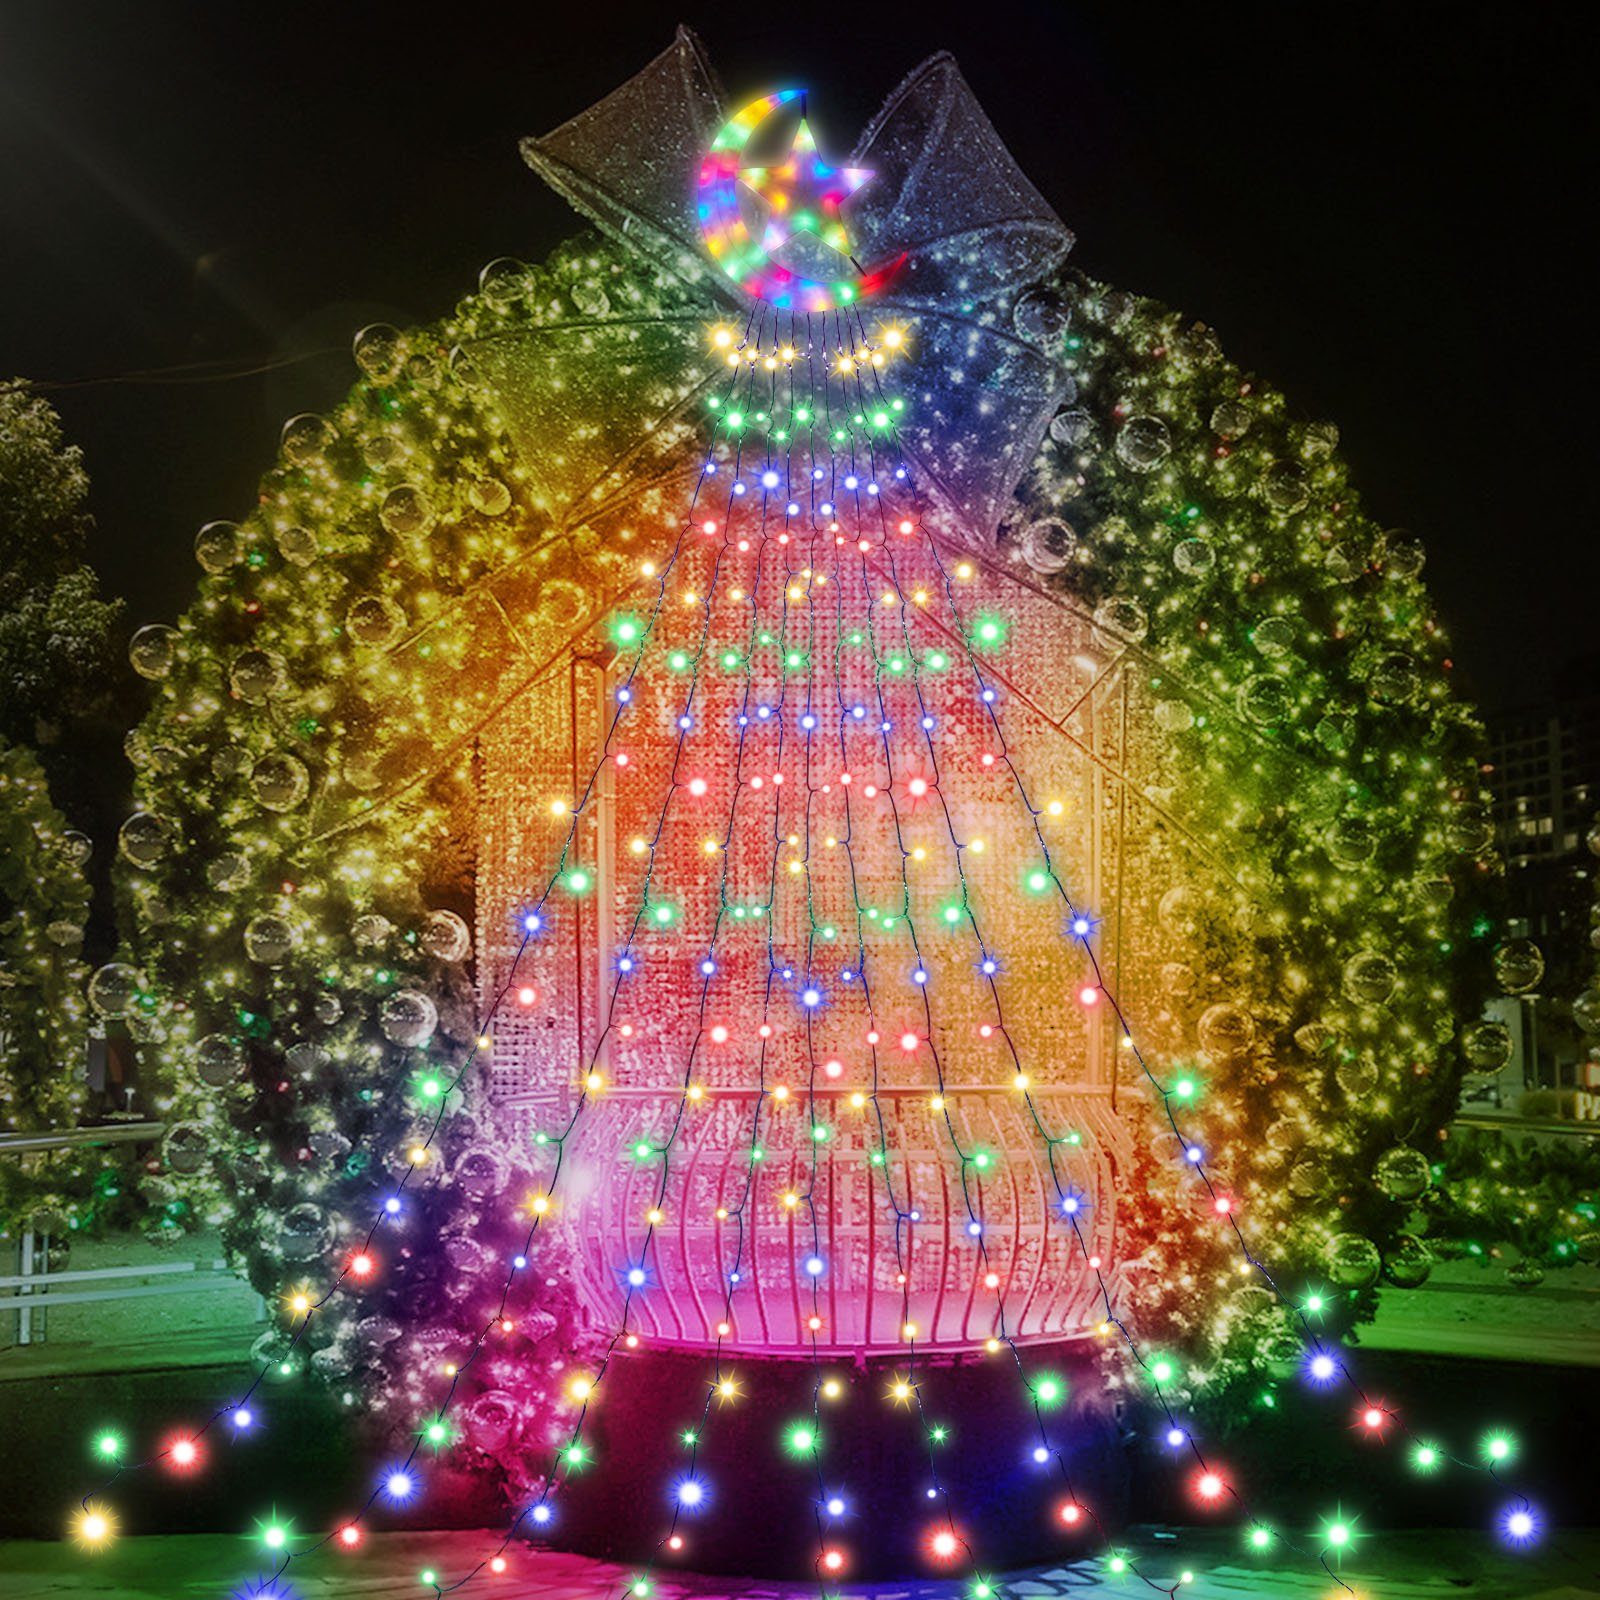 Laybasic Moon mit Topper Star,350 350-flammig, LED-Lichterkette Wasserdicht LEDs, Mehrfarbig Christbaumbeleuchtung,8-Modi,Timer,IP44 Lichterkette Weihnachtsbaum LED